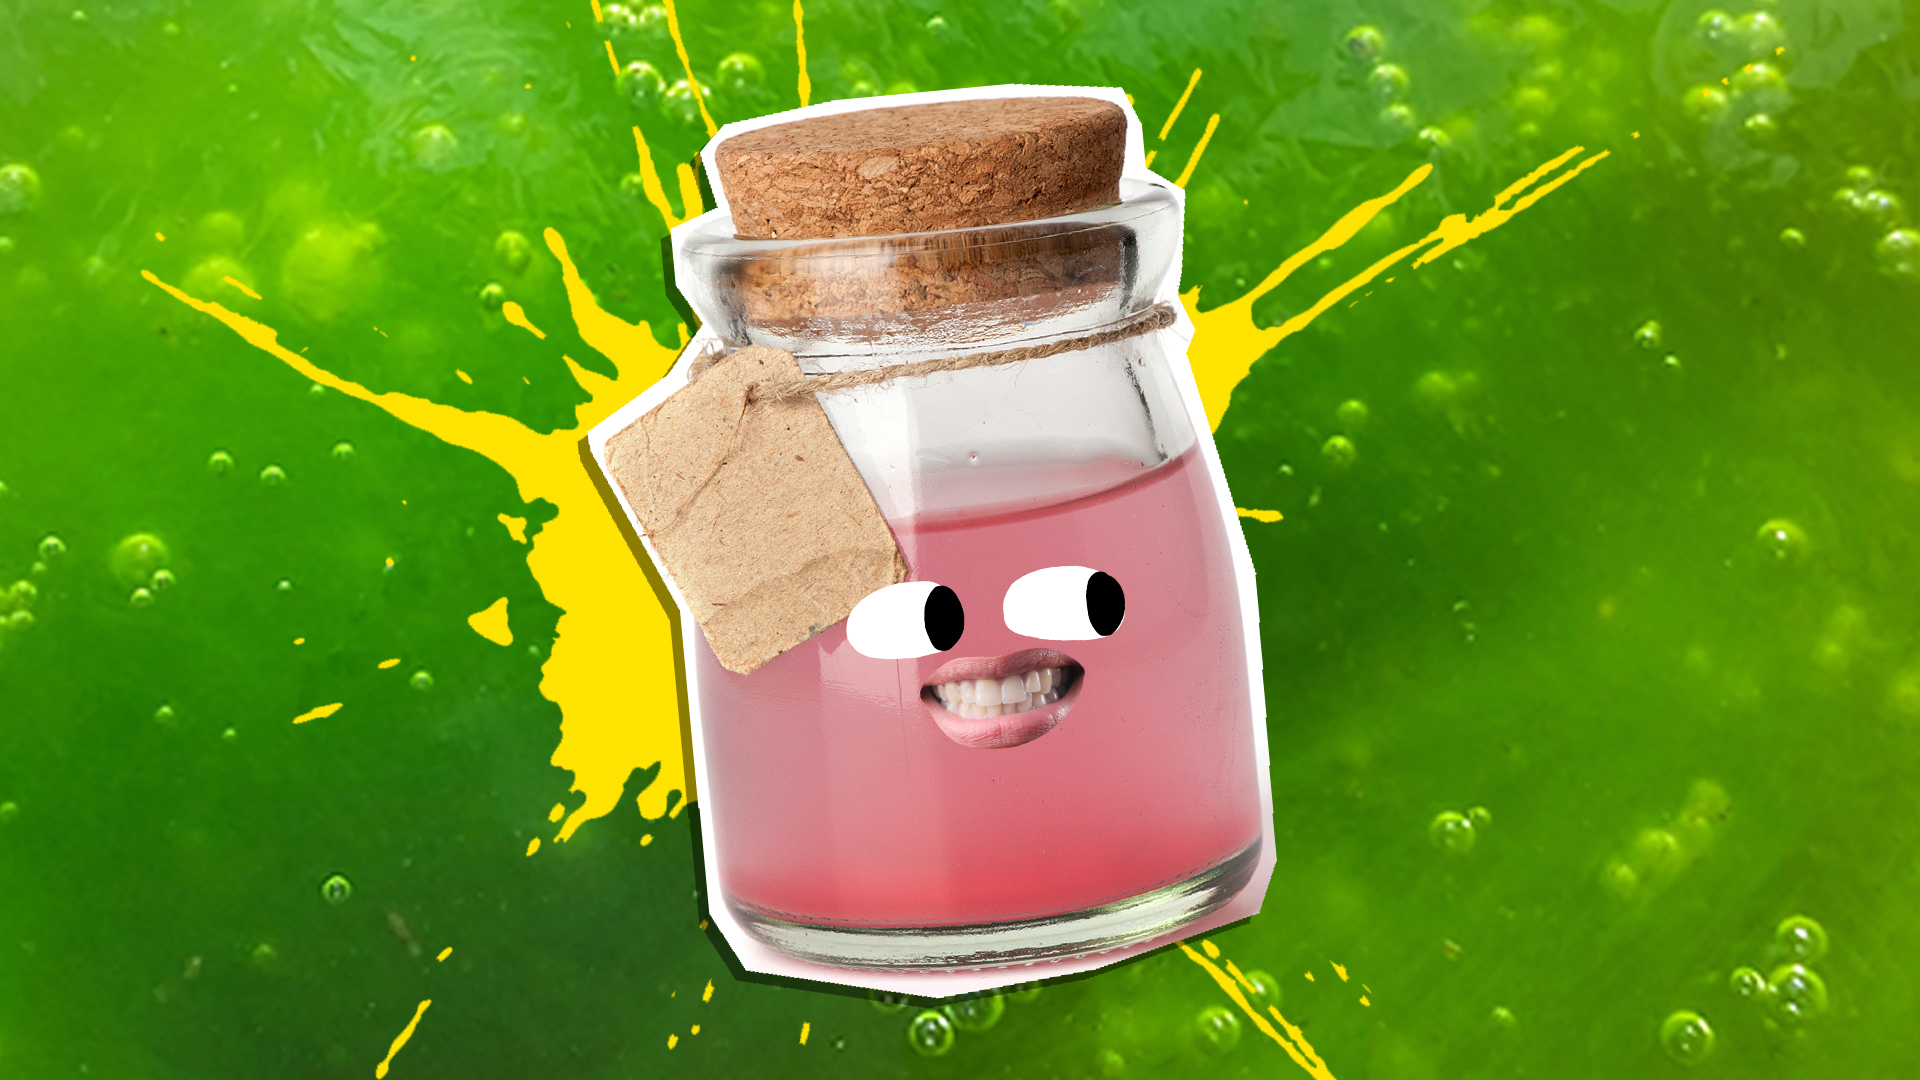 A pink potion